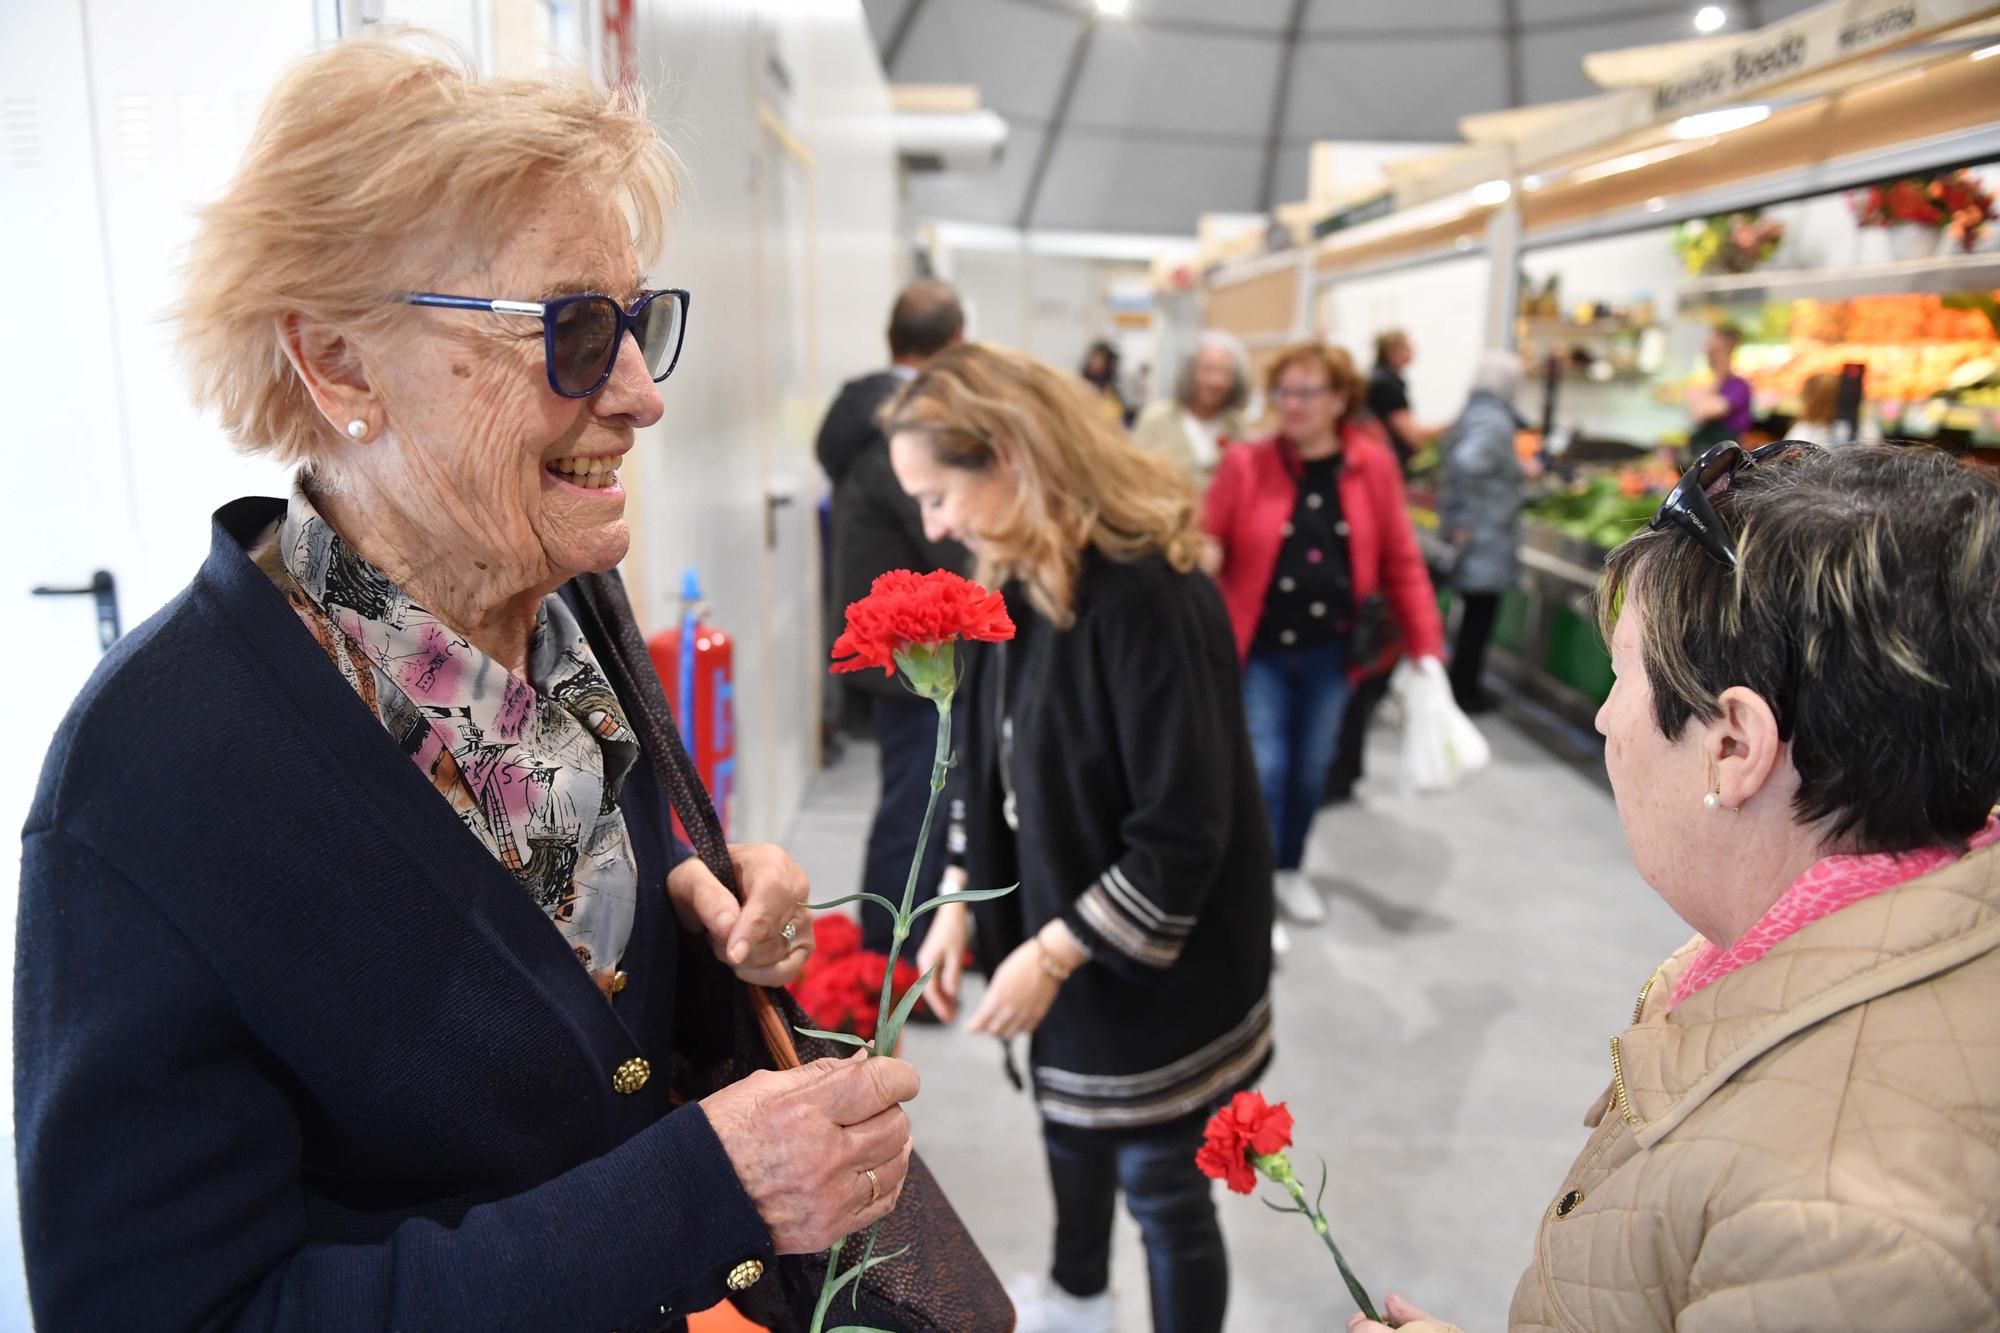 El mercado provisional de Monte Alto abre sus puertas: flores, clientes de siempre y nuevos curiosos